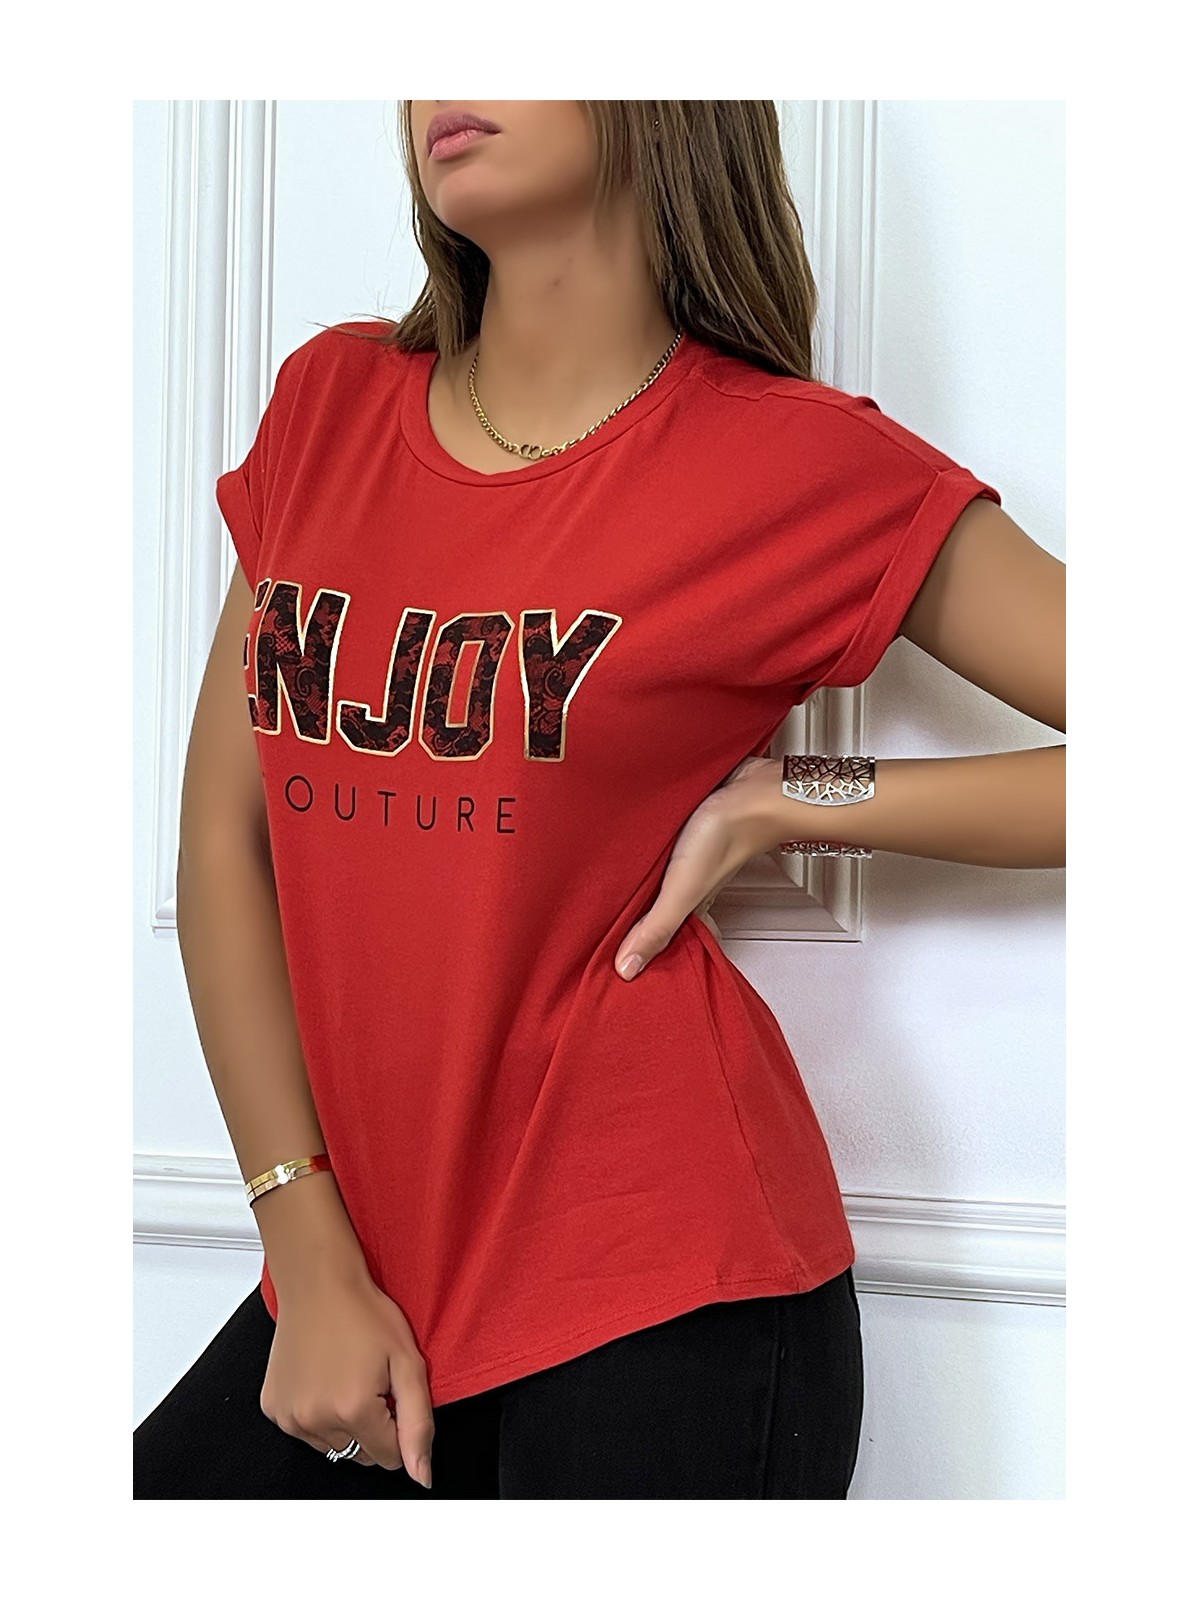 T-shirt rouge ENJOY avec manches revers et coupe loose. T-shirt femme fashion - 1